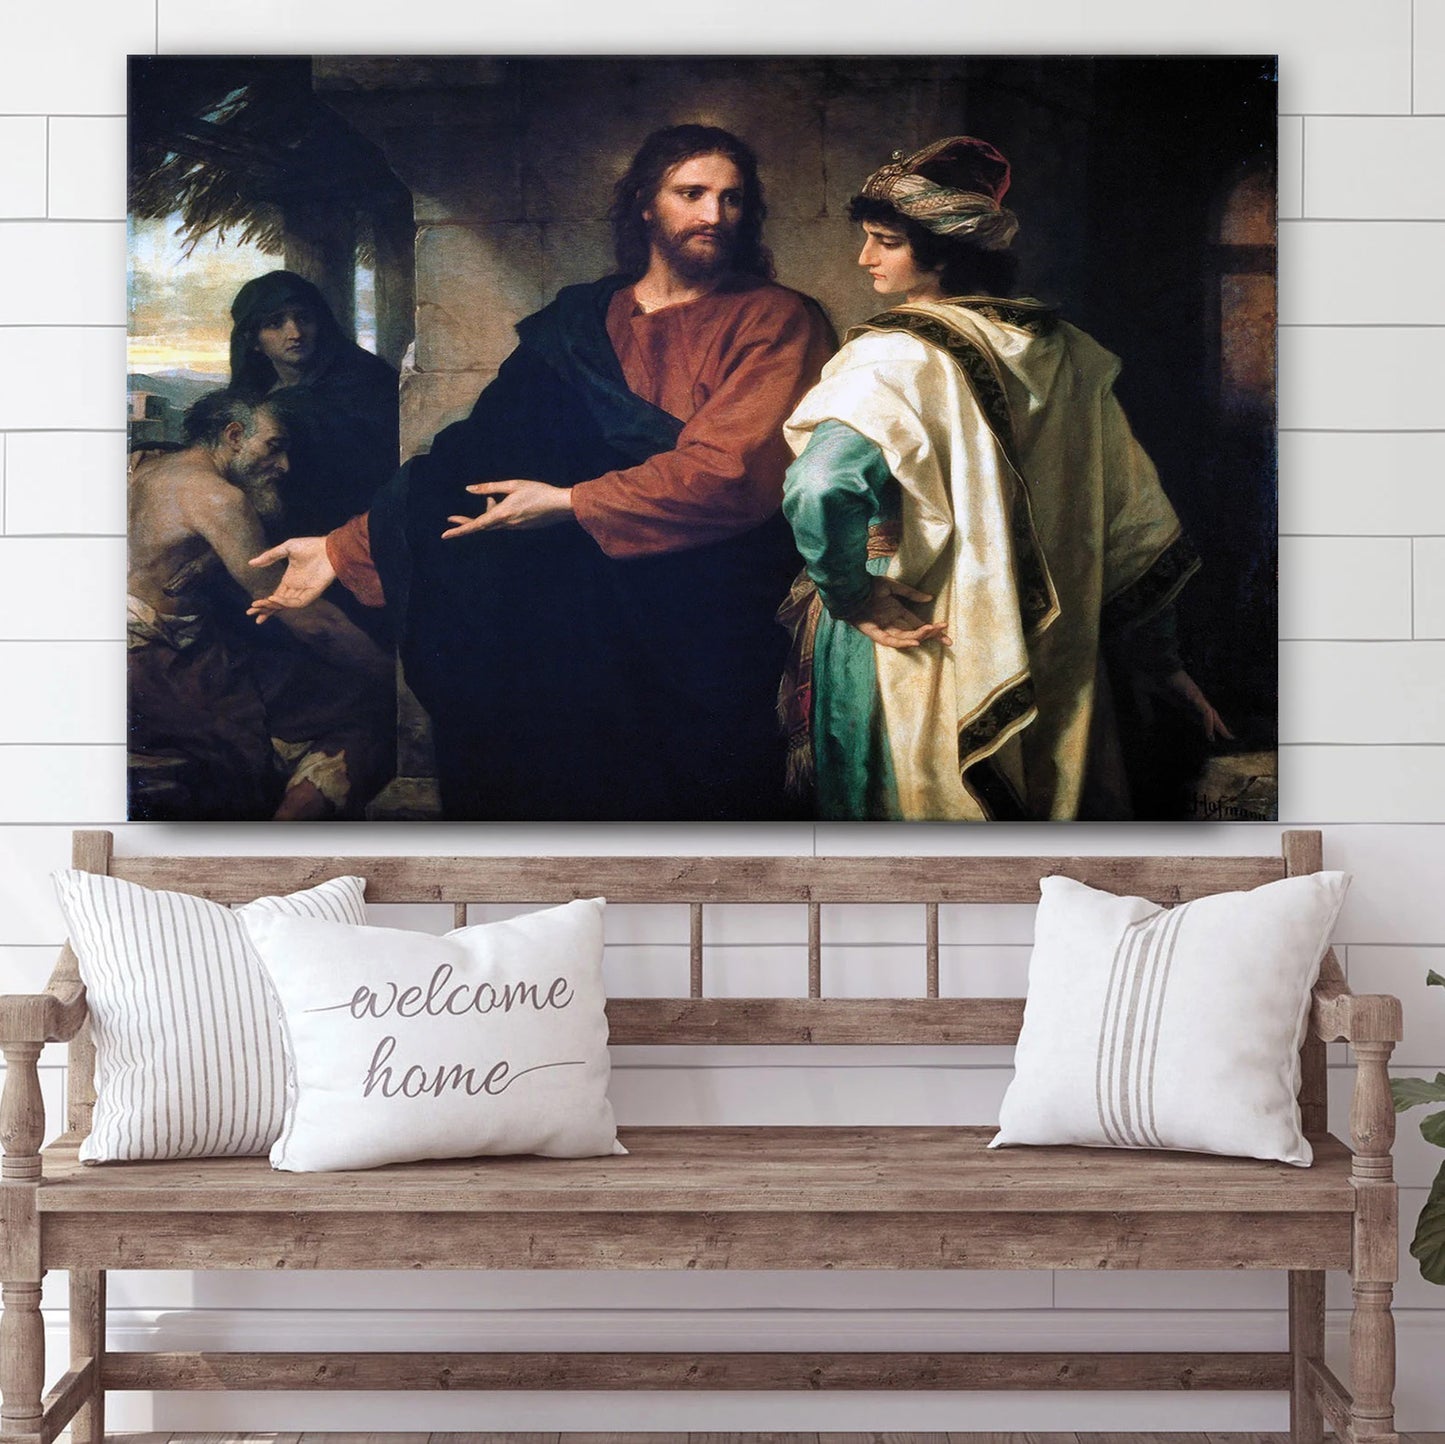 Heinrich Hoffmann Christ - Jesus Canvas Wall Art - Christian Wall Art